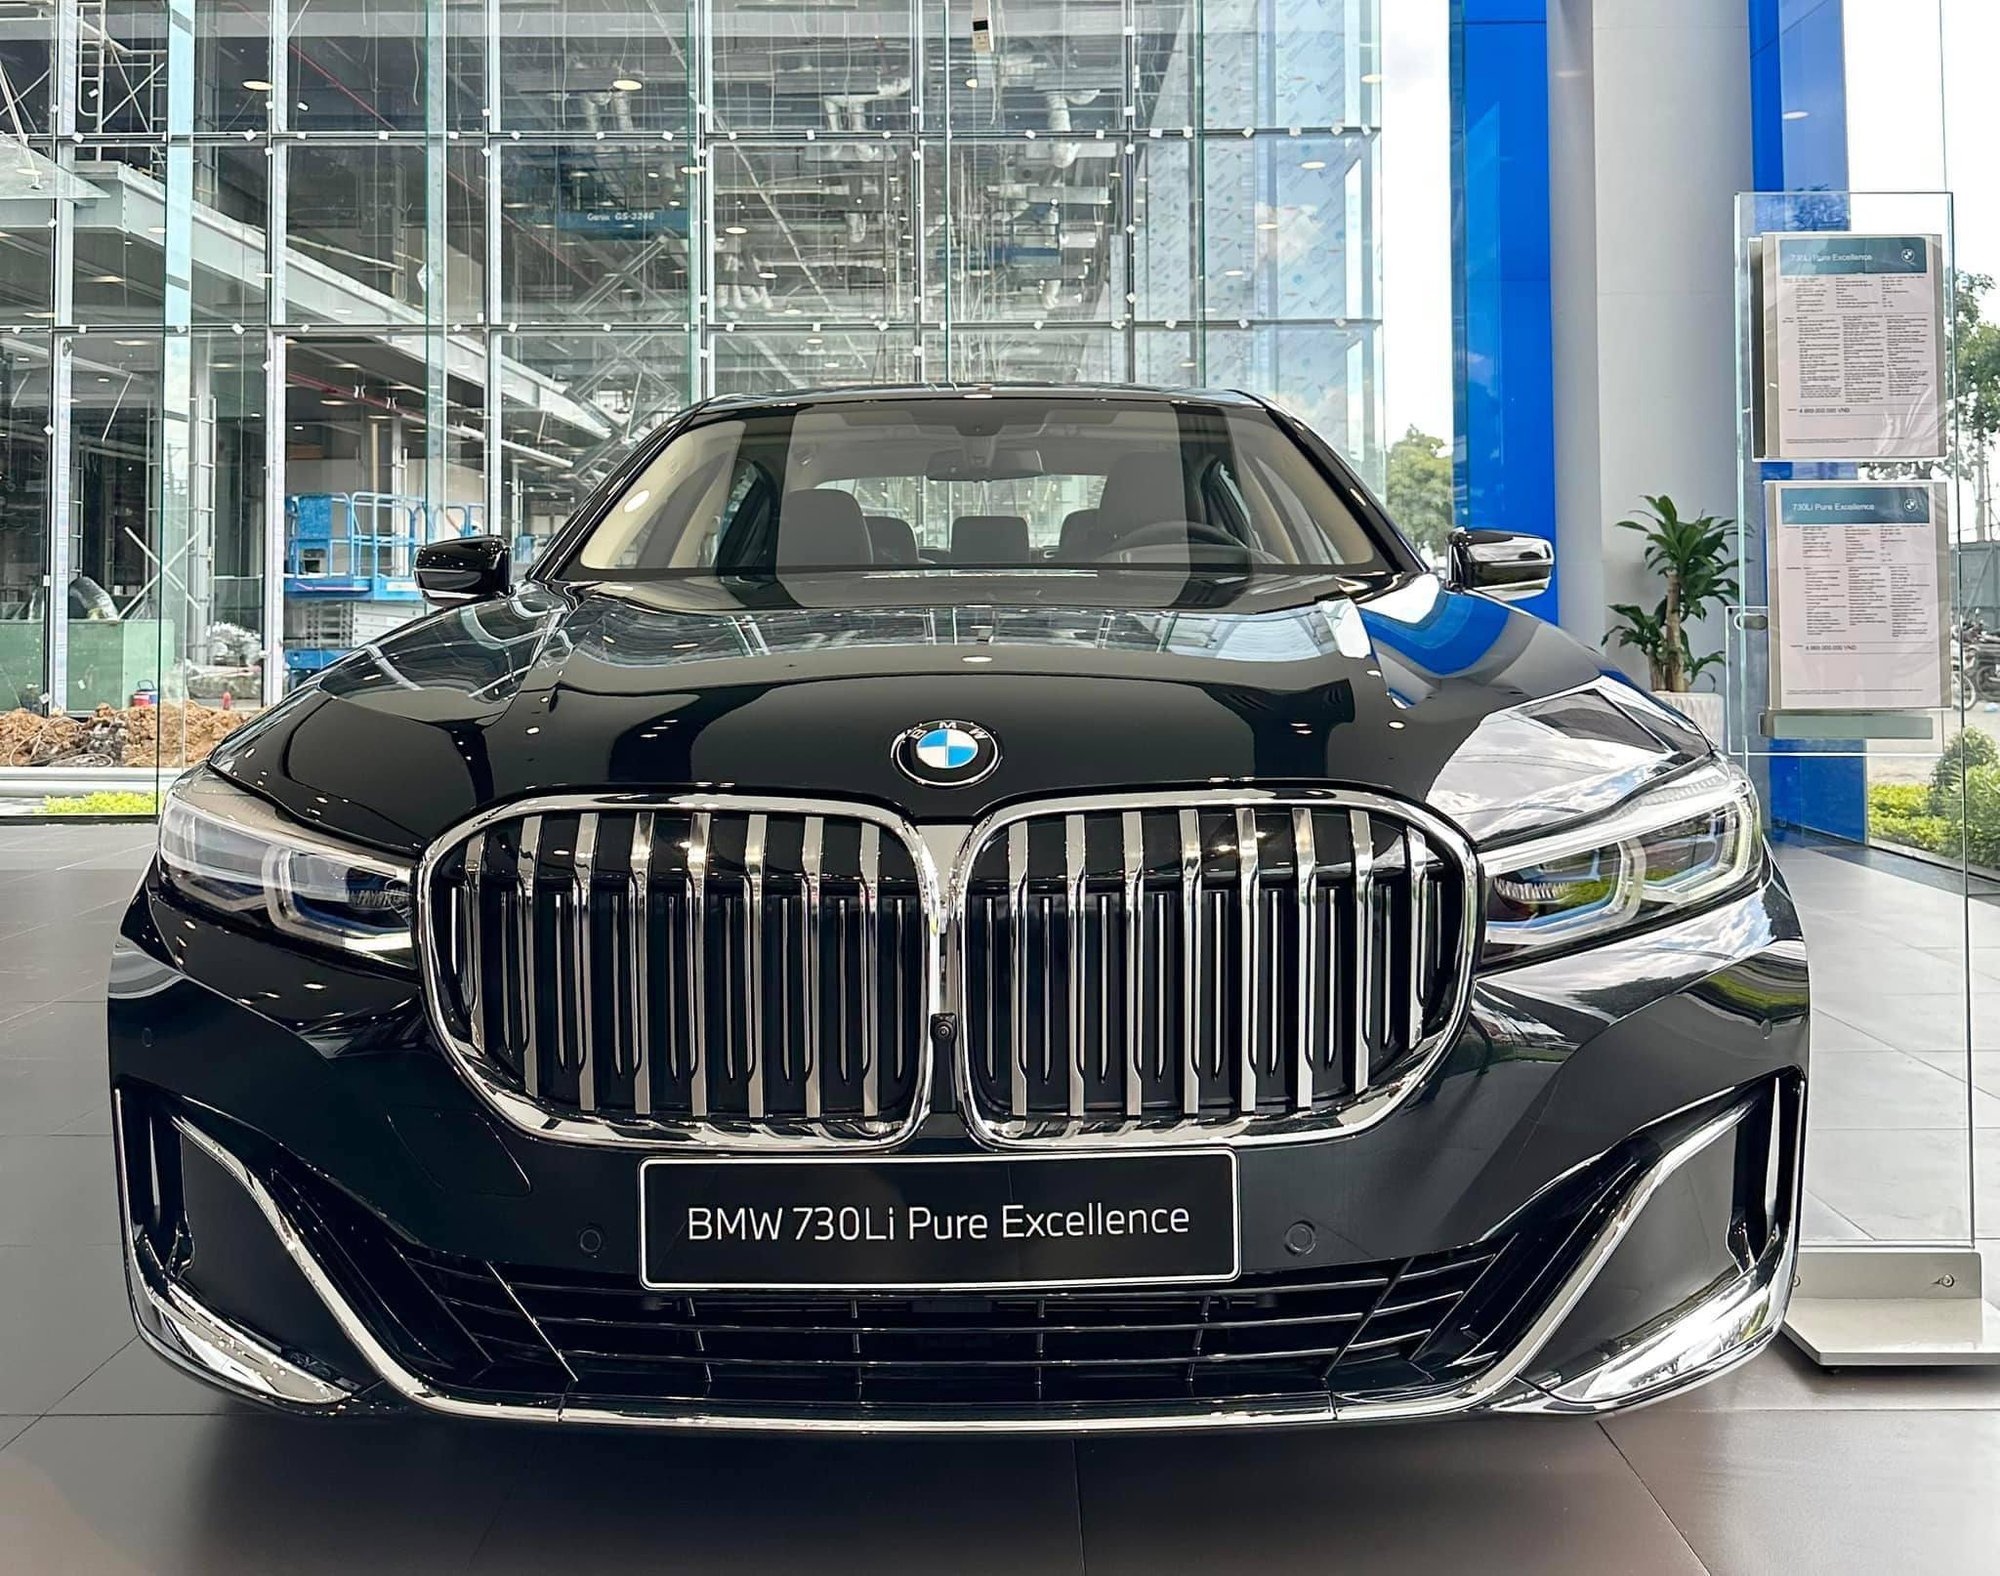 BMW tiếp tục giảm giá tại Việt Nam: 7-Series giảm gần nửa tỷ, X3 rẻ hơn GLC 200 triệu, quyết tâm đua doanh số với Mercedes - Ảnh 4.